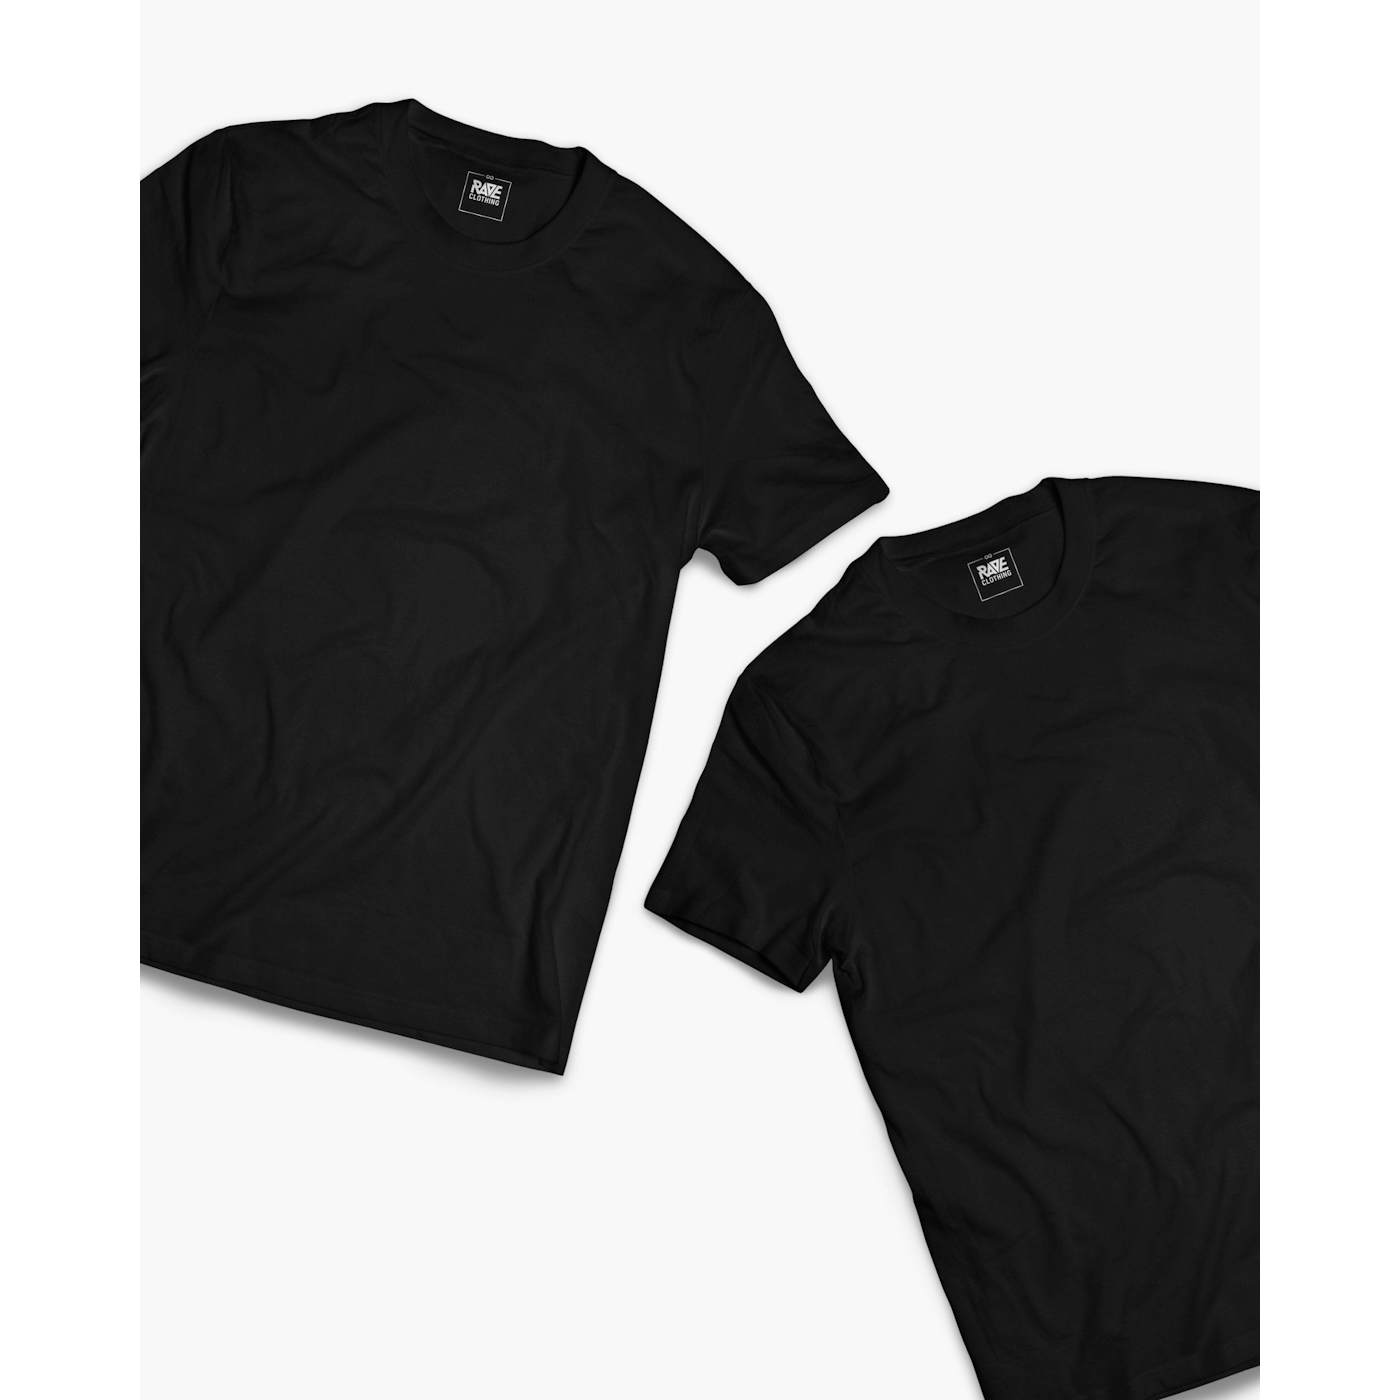 Rave Clothing Tekk King & Tekk Queen Partner T-Shirts